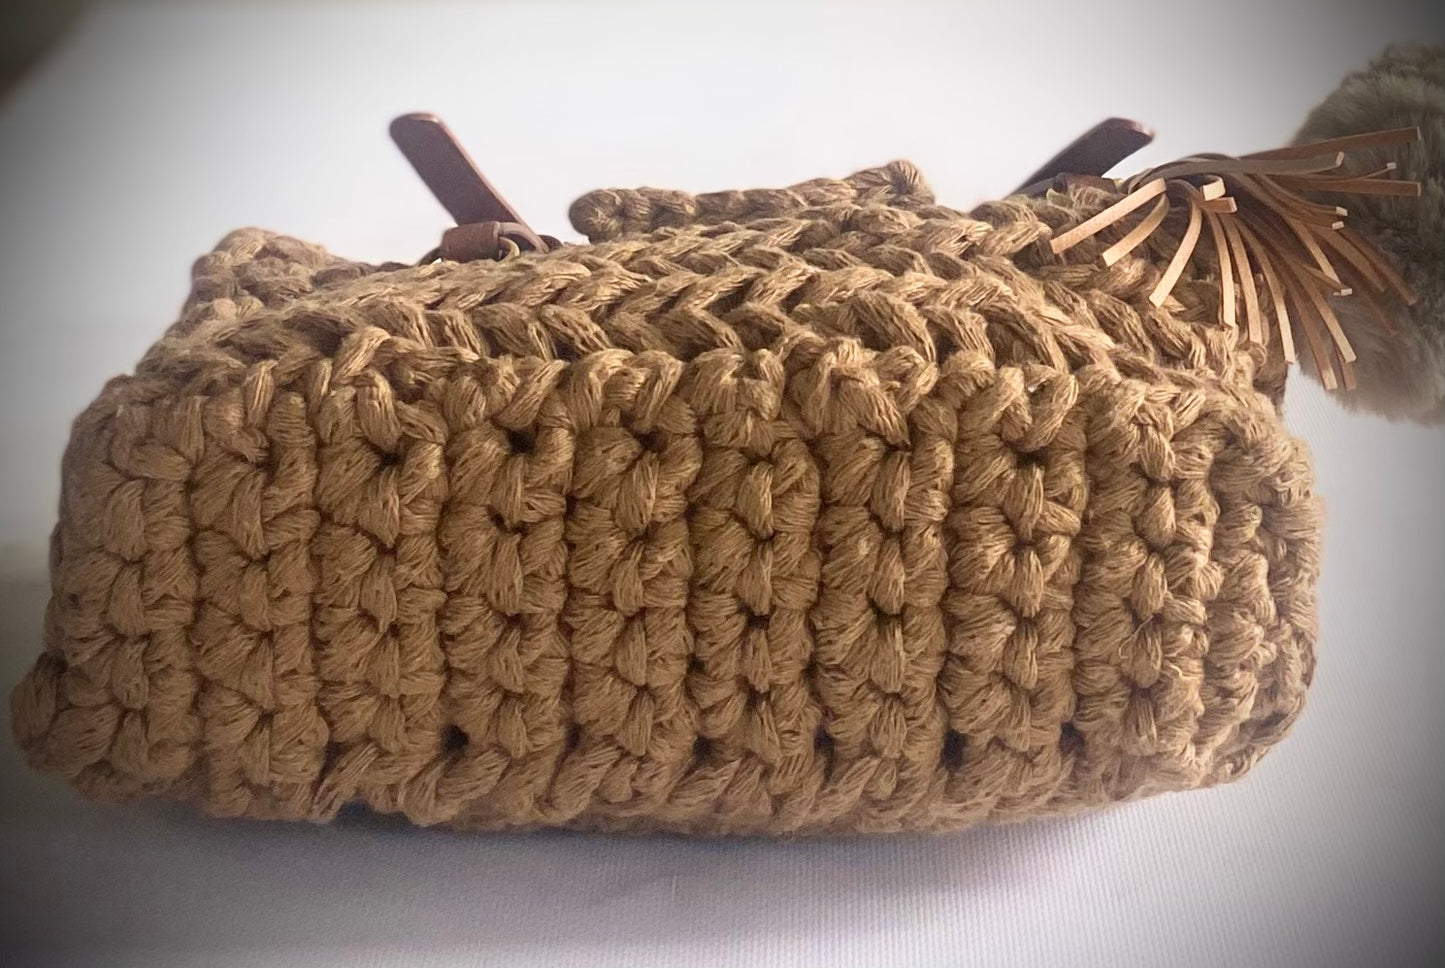 Classic crochet Handbag 1 of 1, Kreations by V Luxury Crochet Handbag